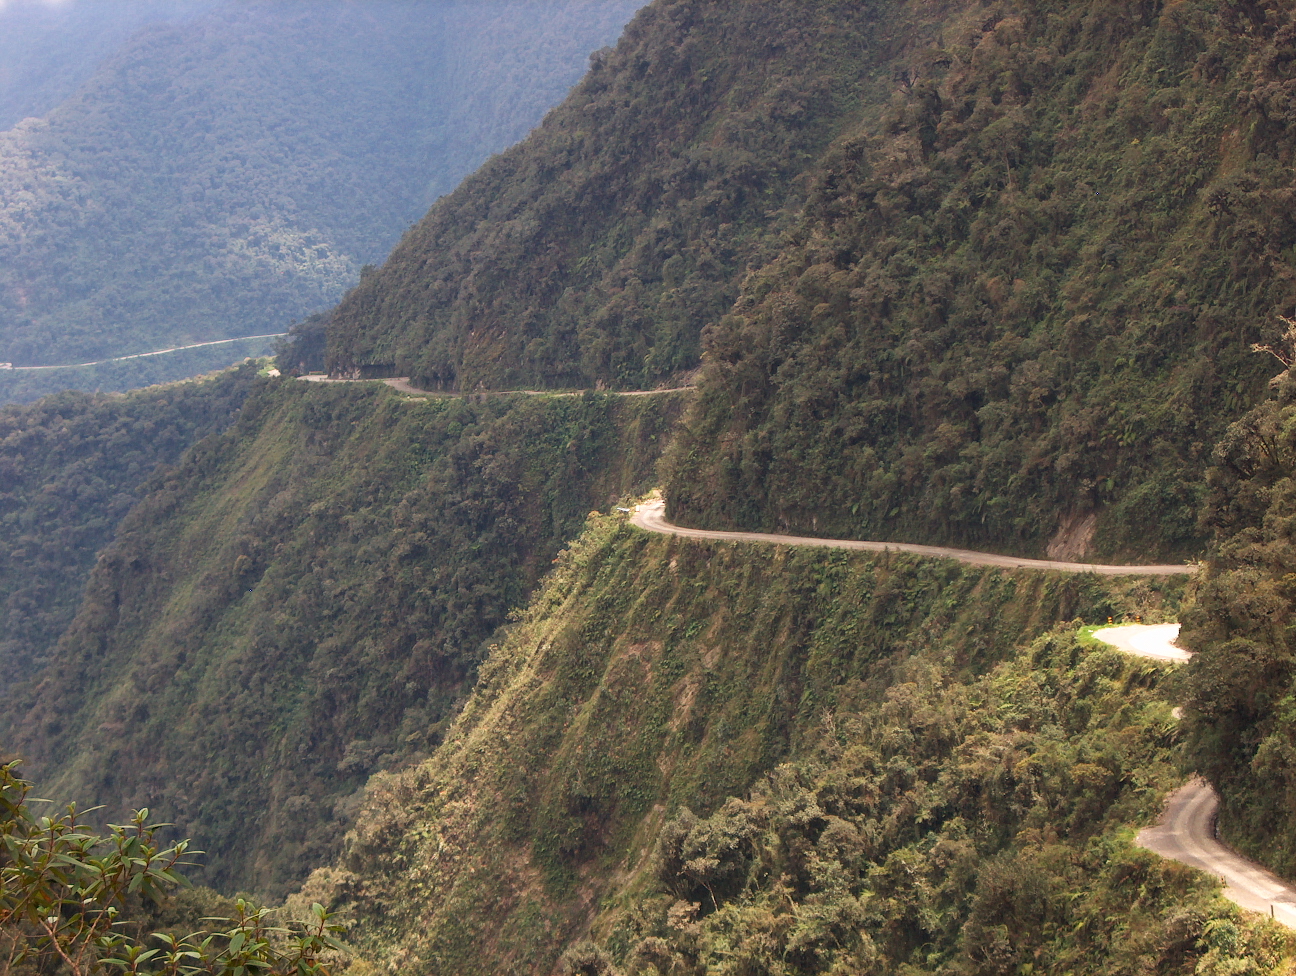 El camino es de 80 kilómetros, con precipicios de hasta 800 metros de altura. (Foto: GilCahana/Wikimedia Commons)